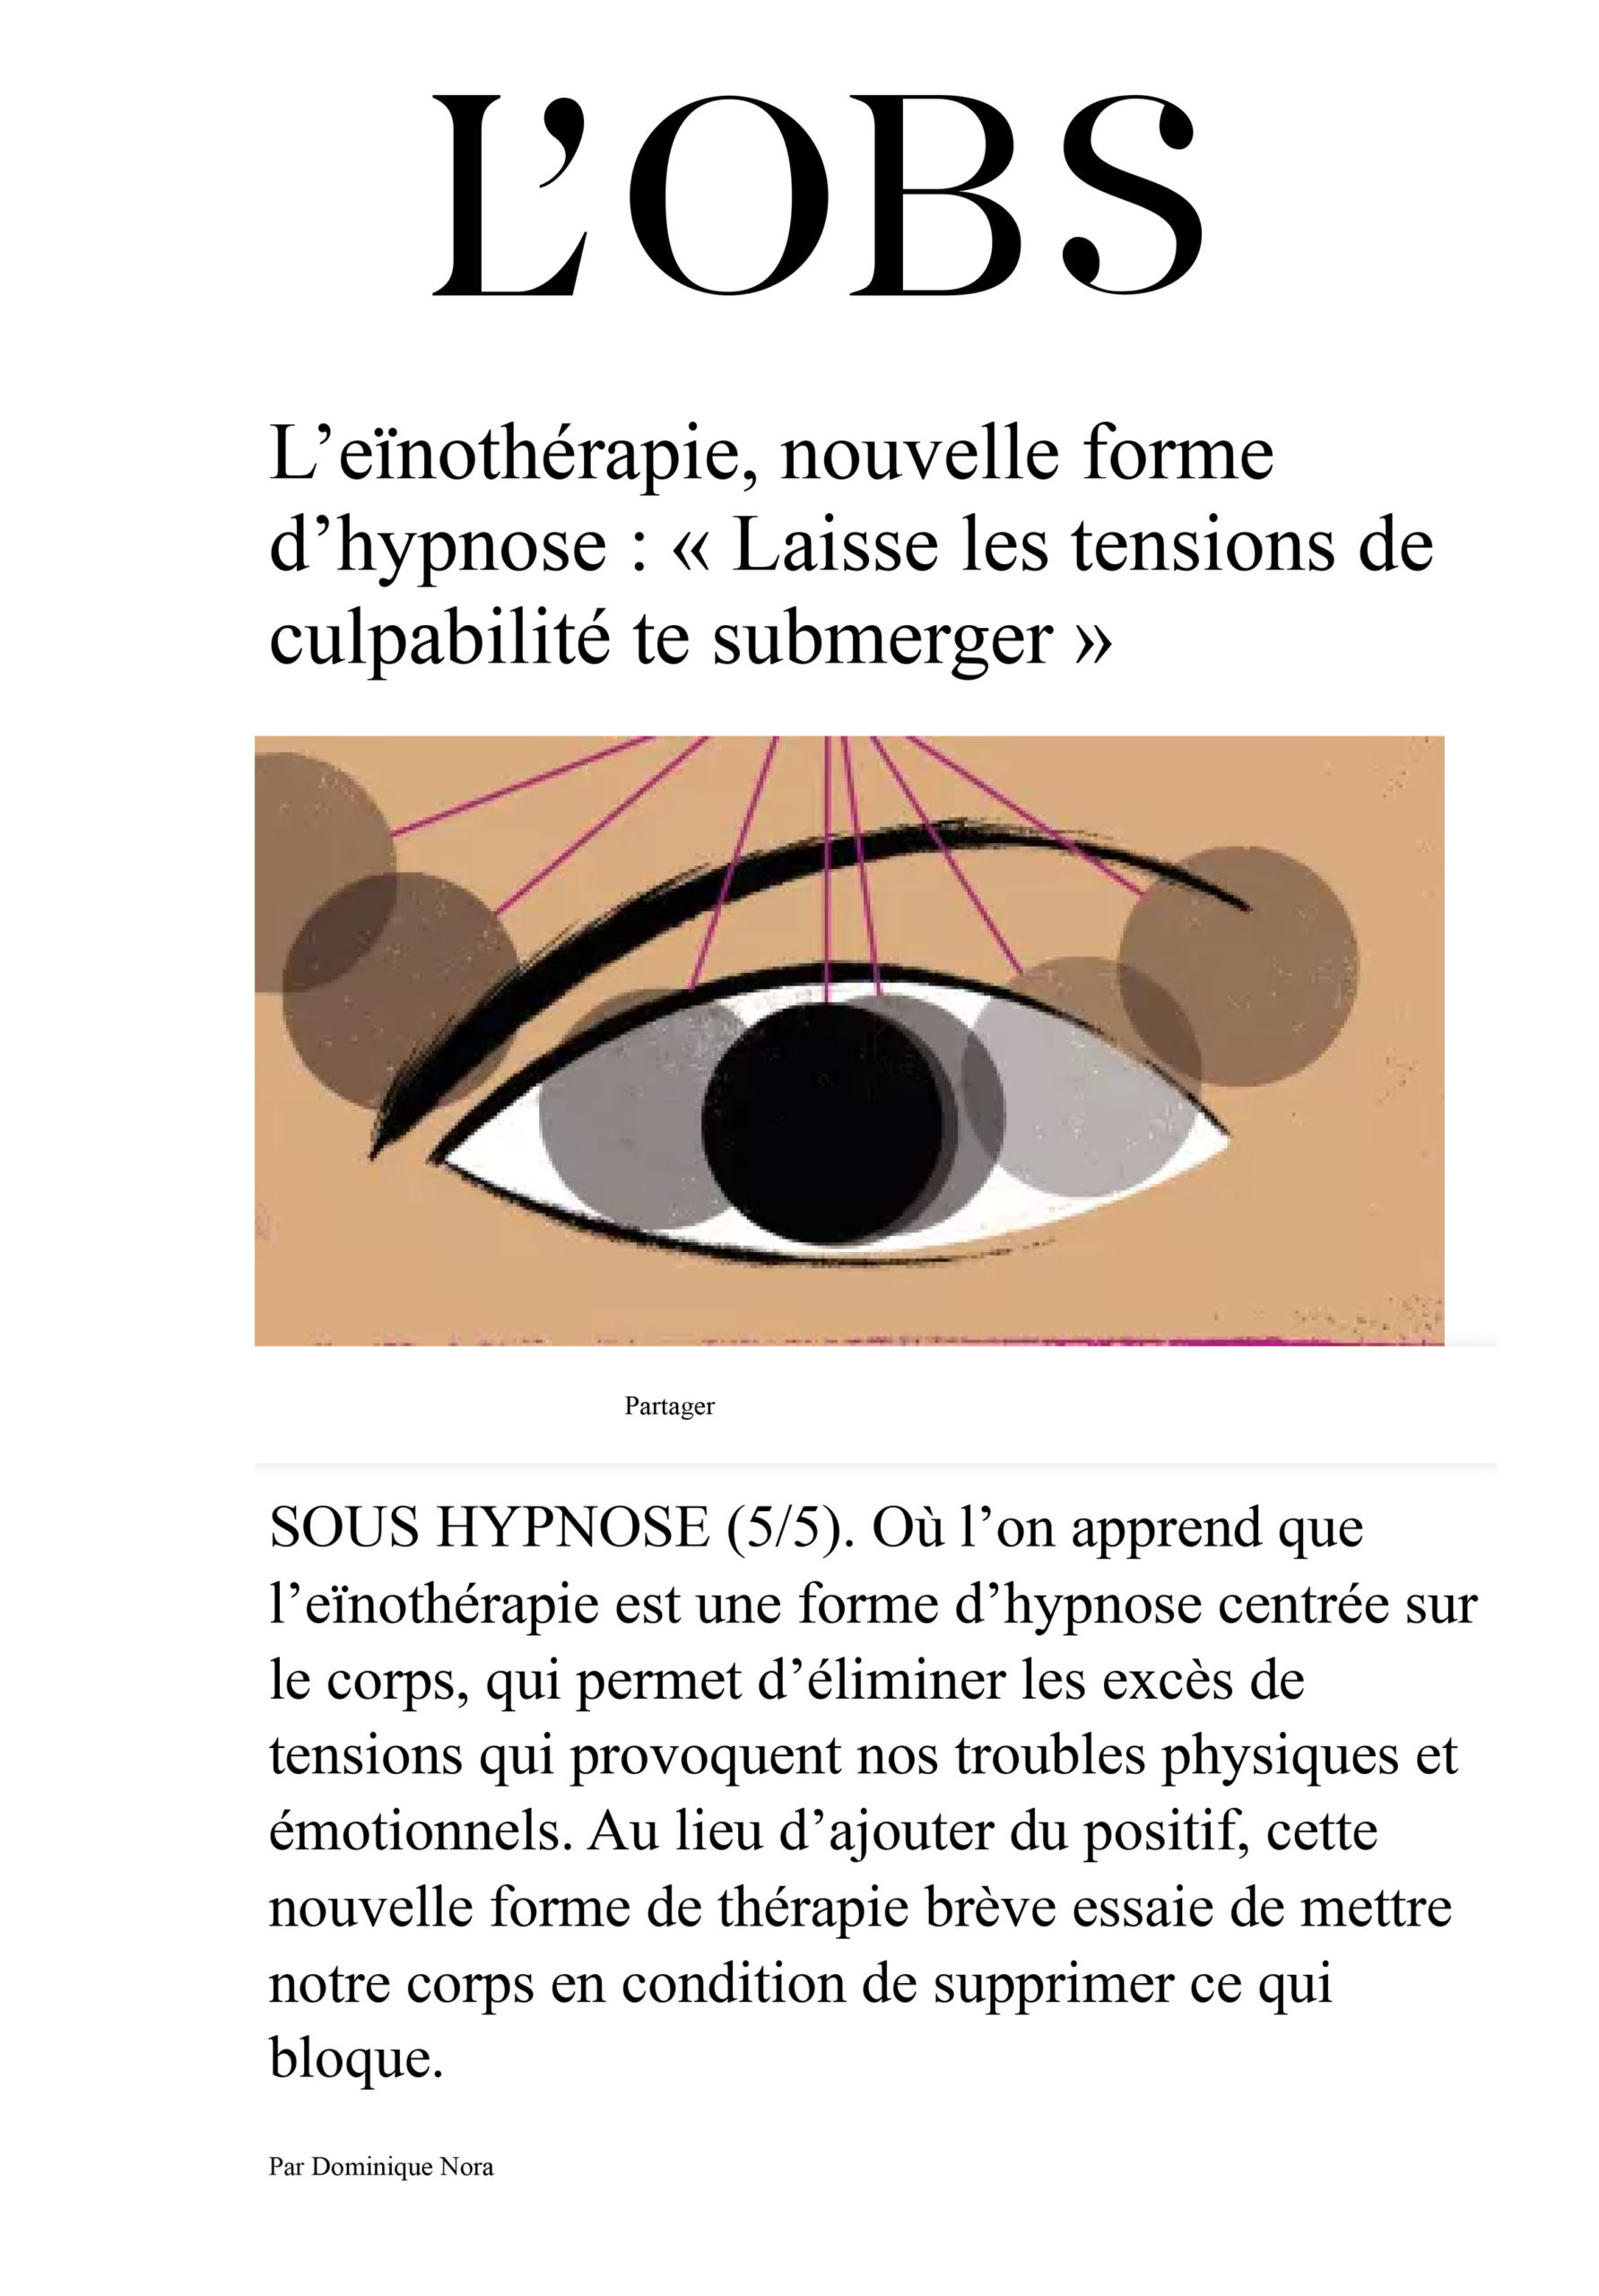 Article du Nouvel Obs par Dominique Nora sur l'eïnothérapie, nouvelle forme d’hypnose